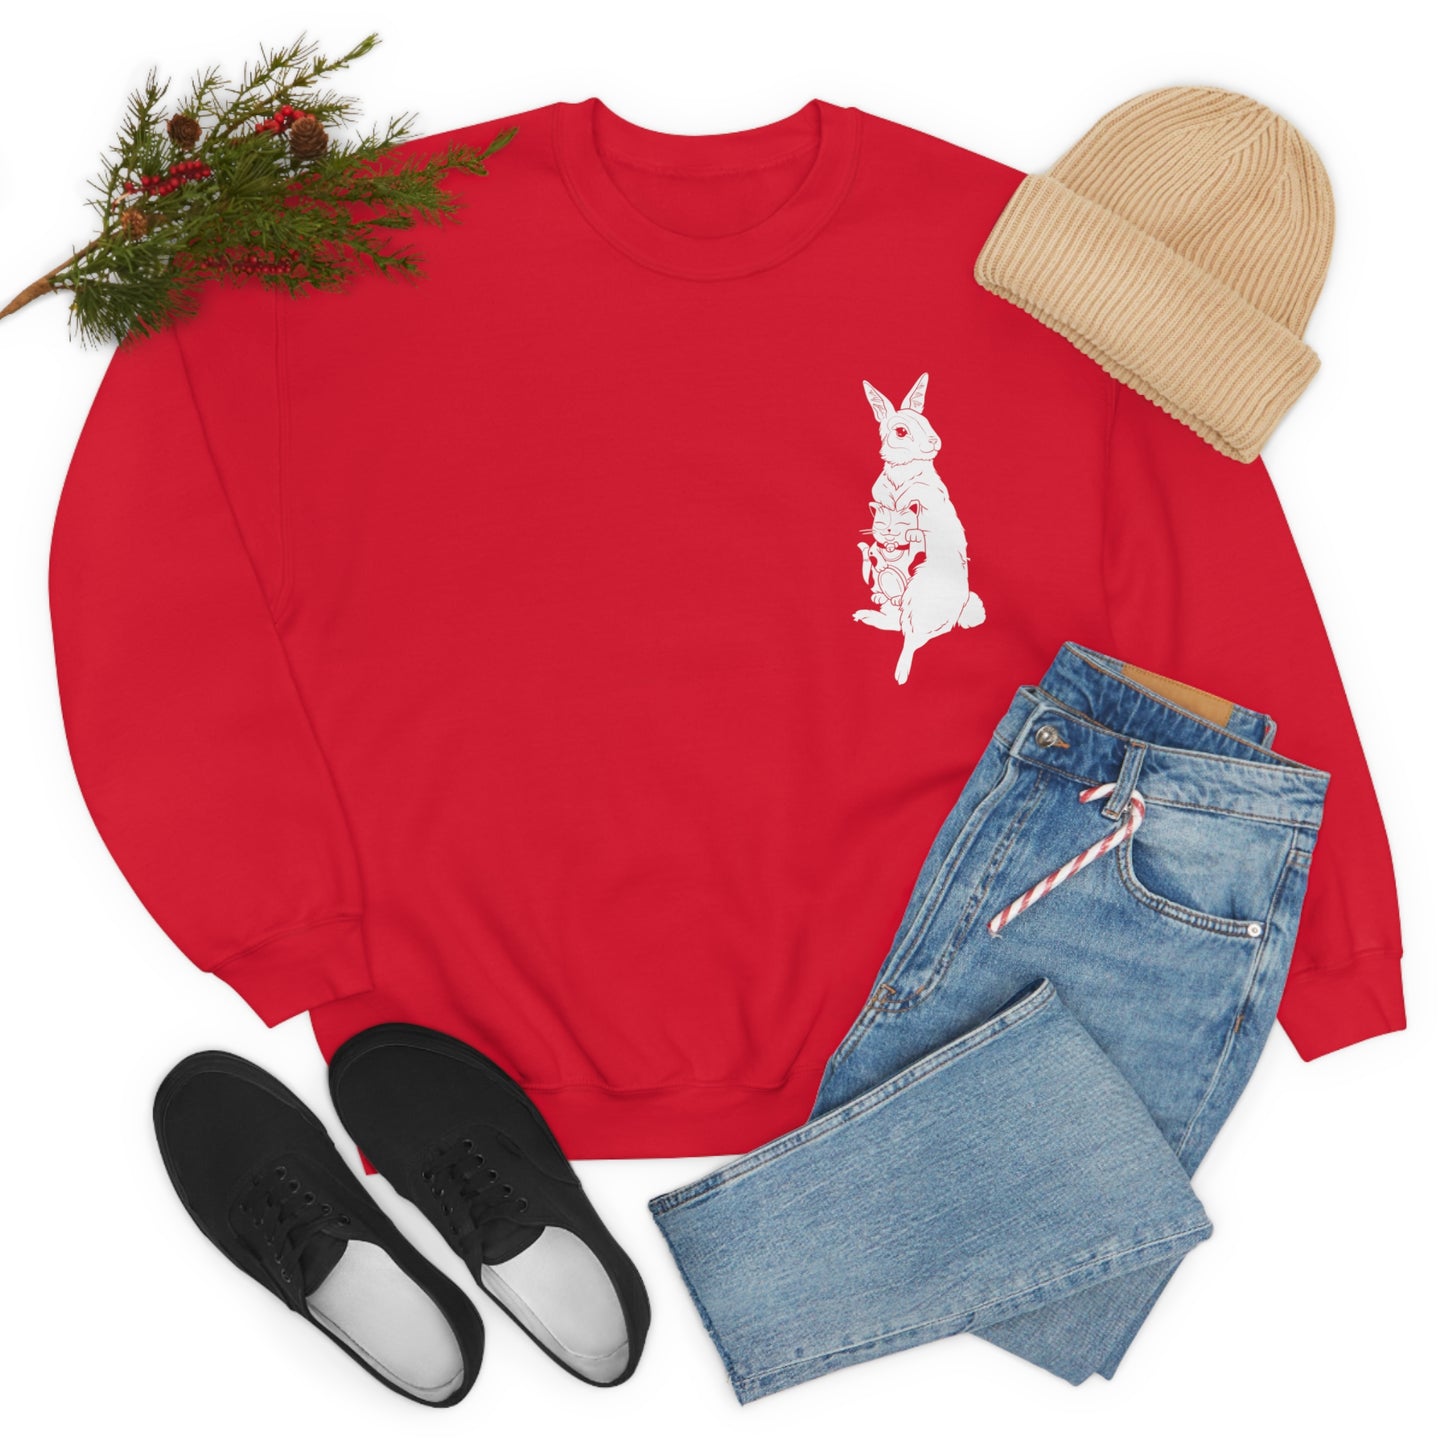 Rabbit w/Maneki Neko - Sweatshirt